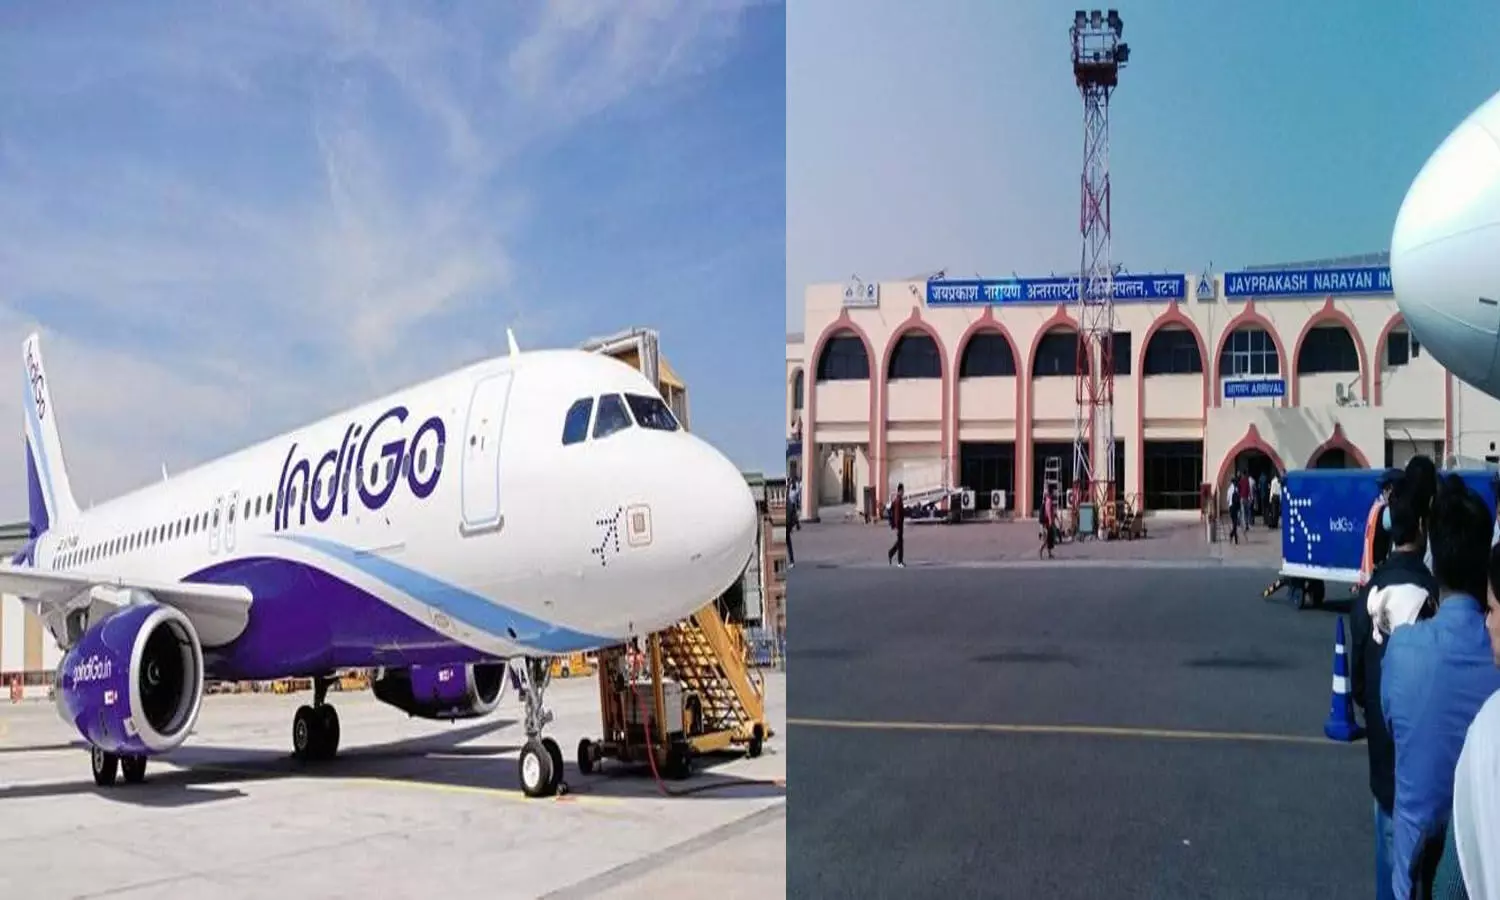 चक्रवाती तूफान Tauktae का असर: पटना एयरपोर्ट से 42 उड़ानें रद्द, यात्री परेशान